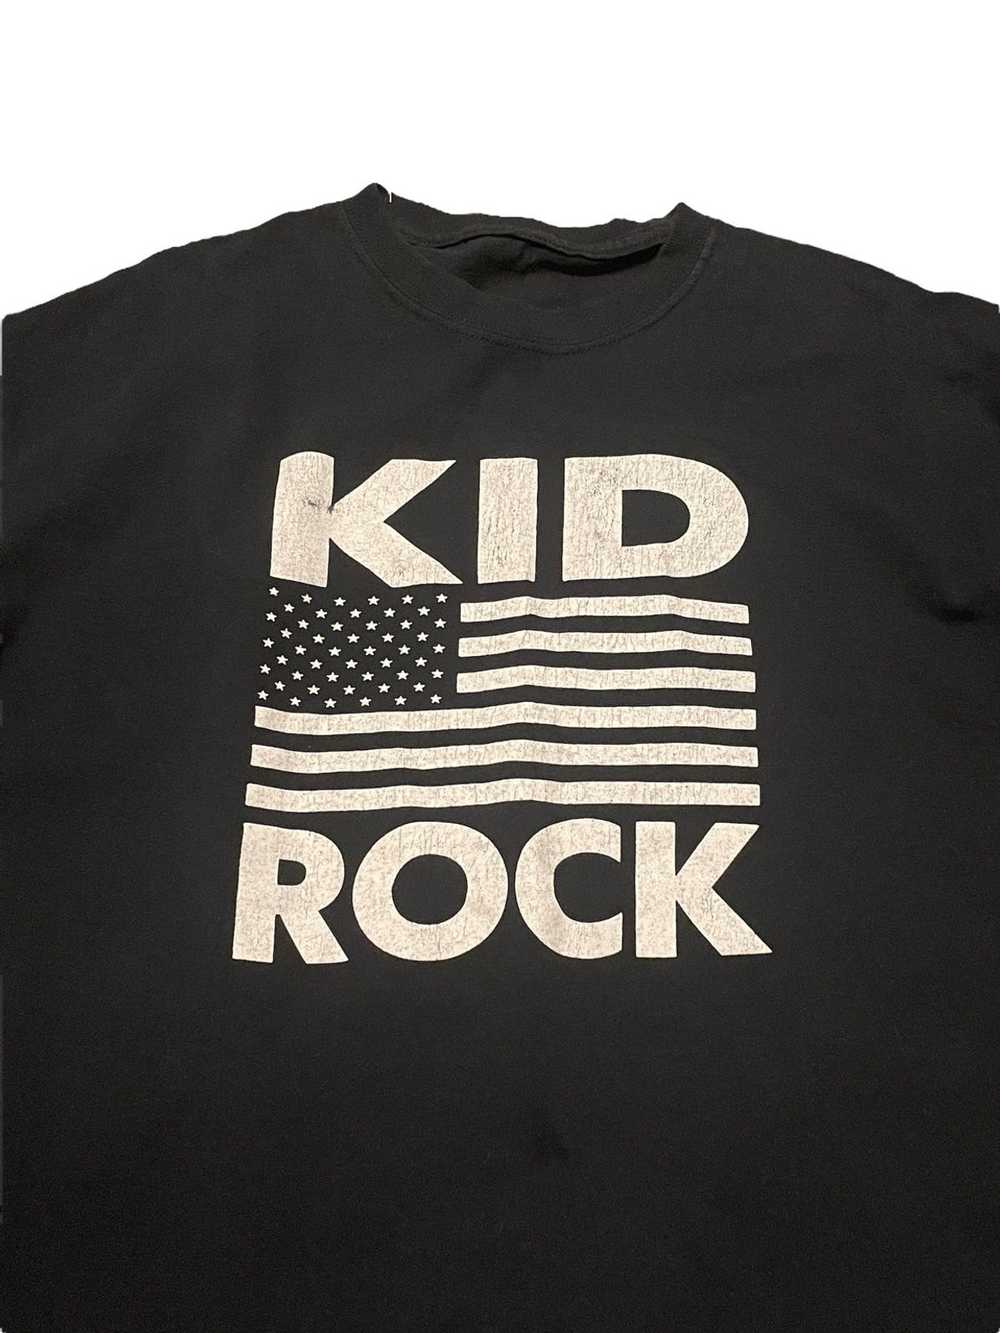 Rock T Shirt × Streetwear × Vintage Vintage kid r… - image 2